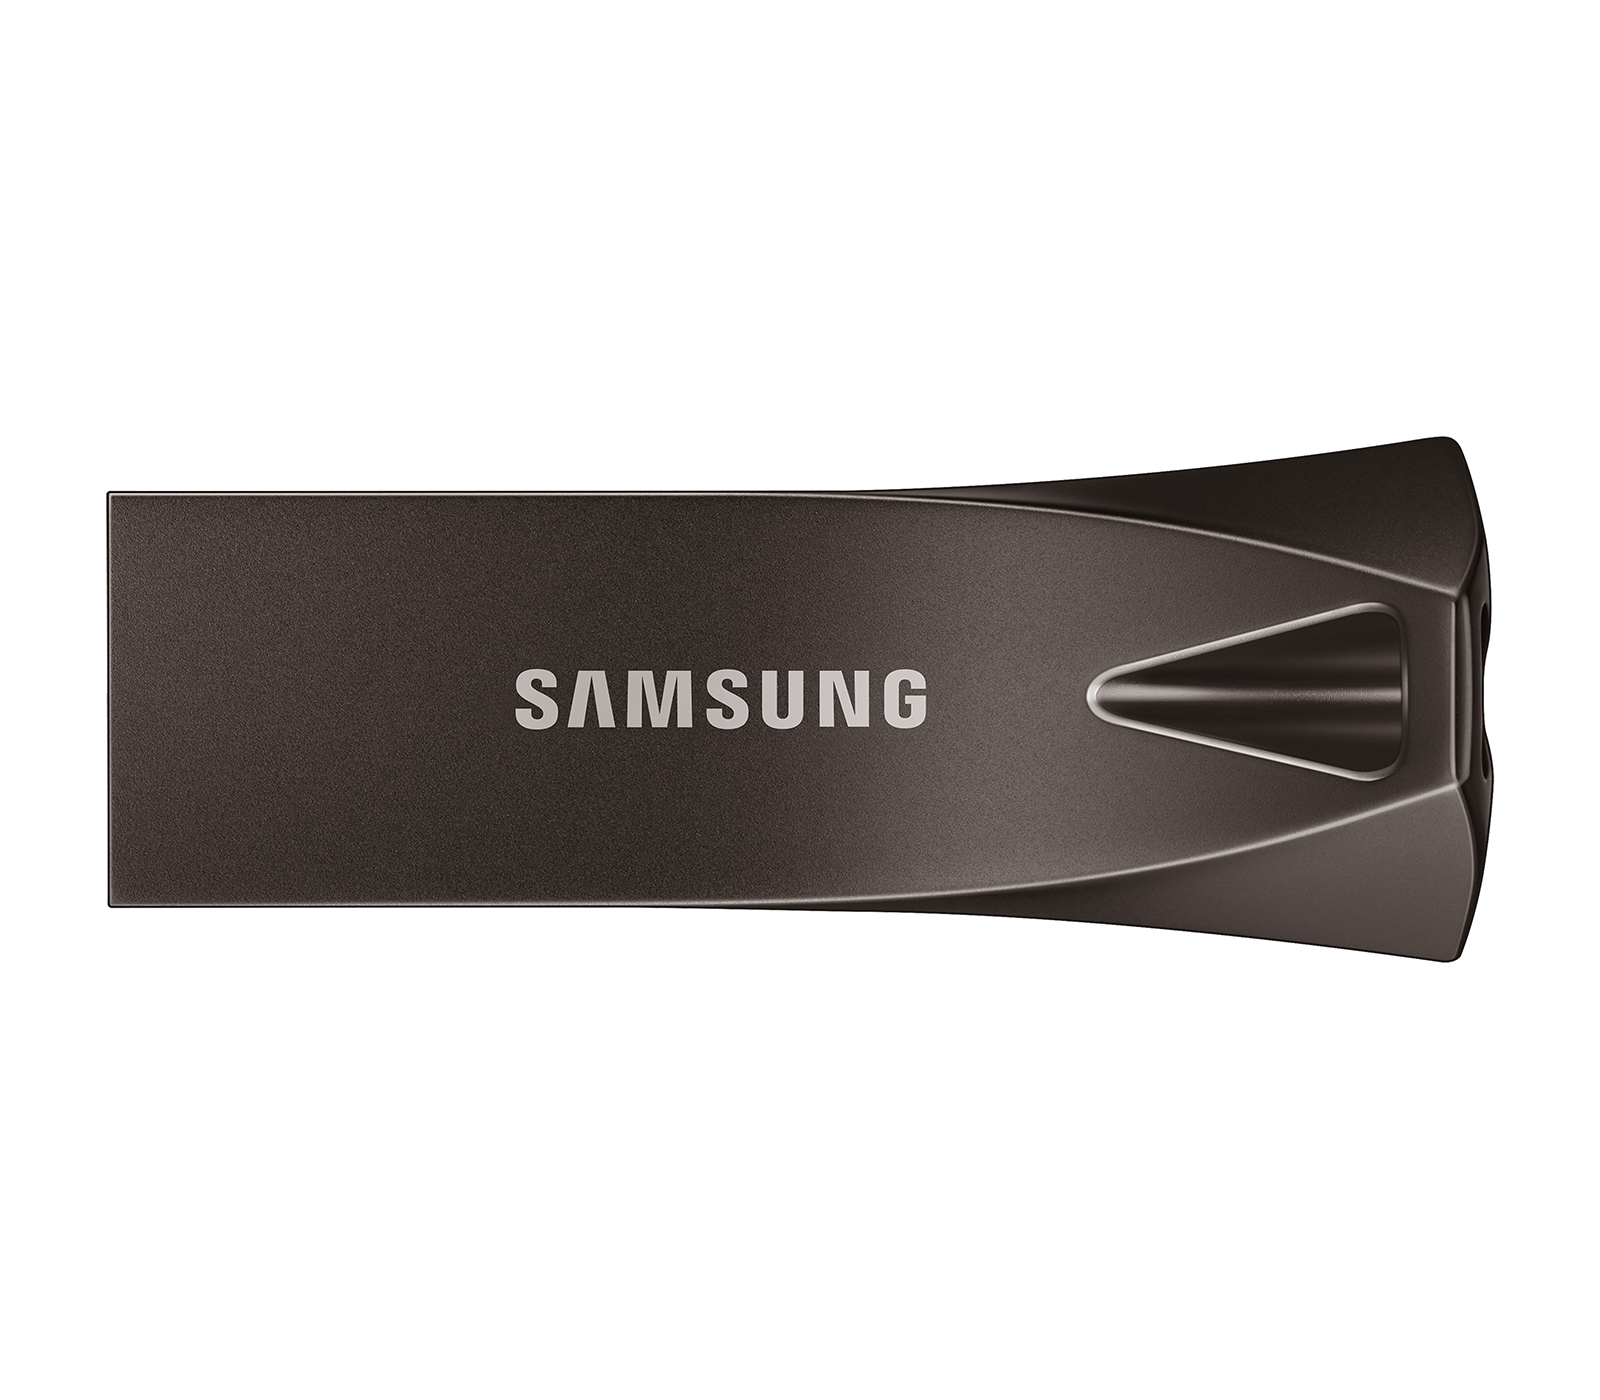 MUF-128BE4/AM Samsung BAR Plus 128GB 300MB/s USB 3.1 Flash Drive Titan Gray